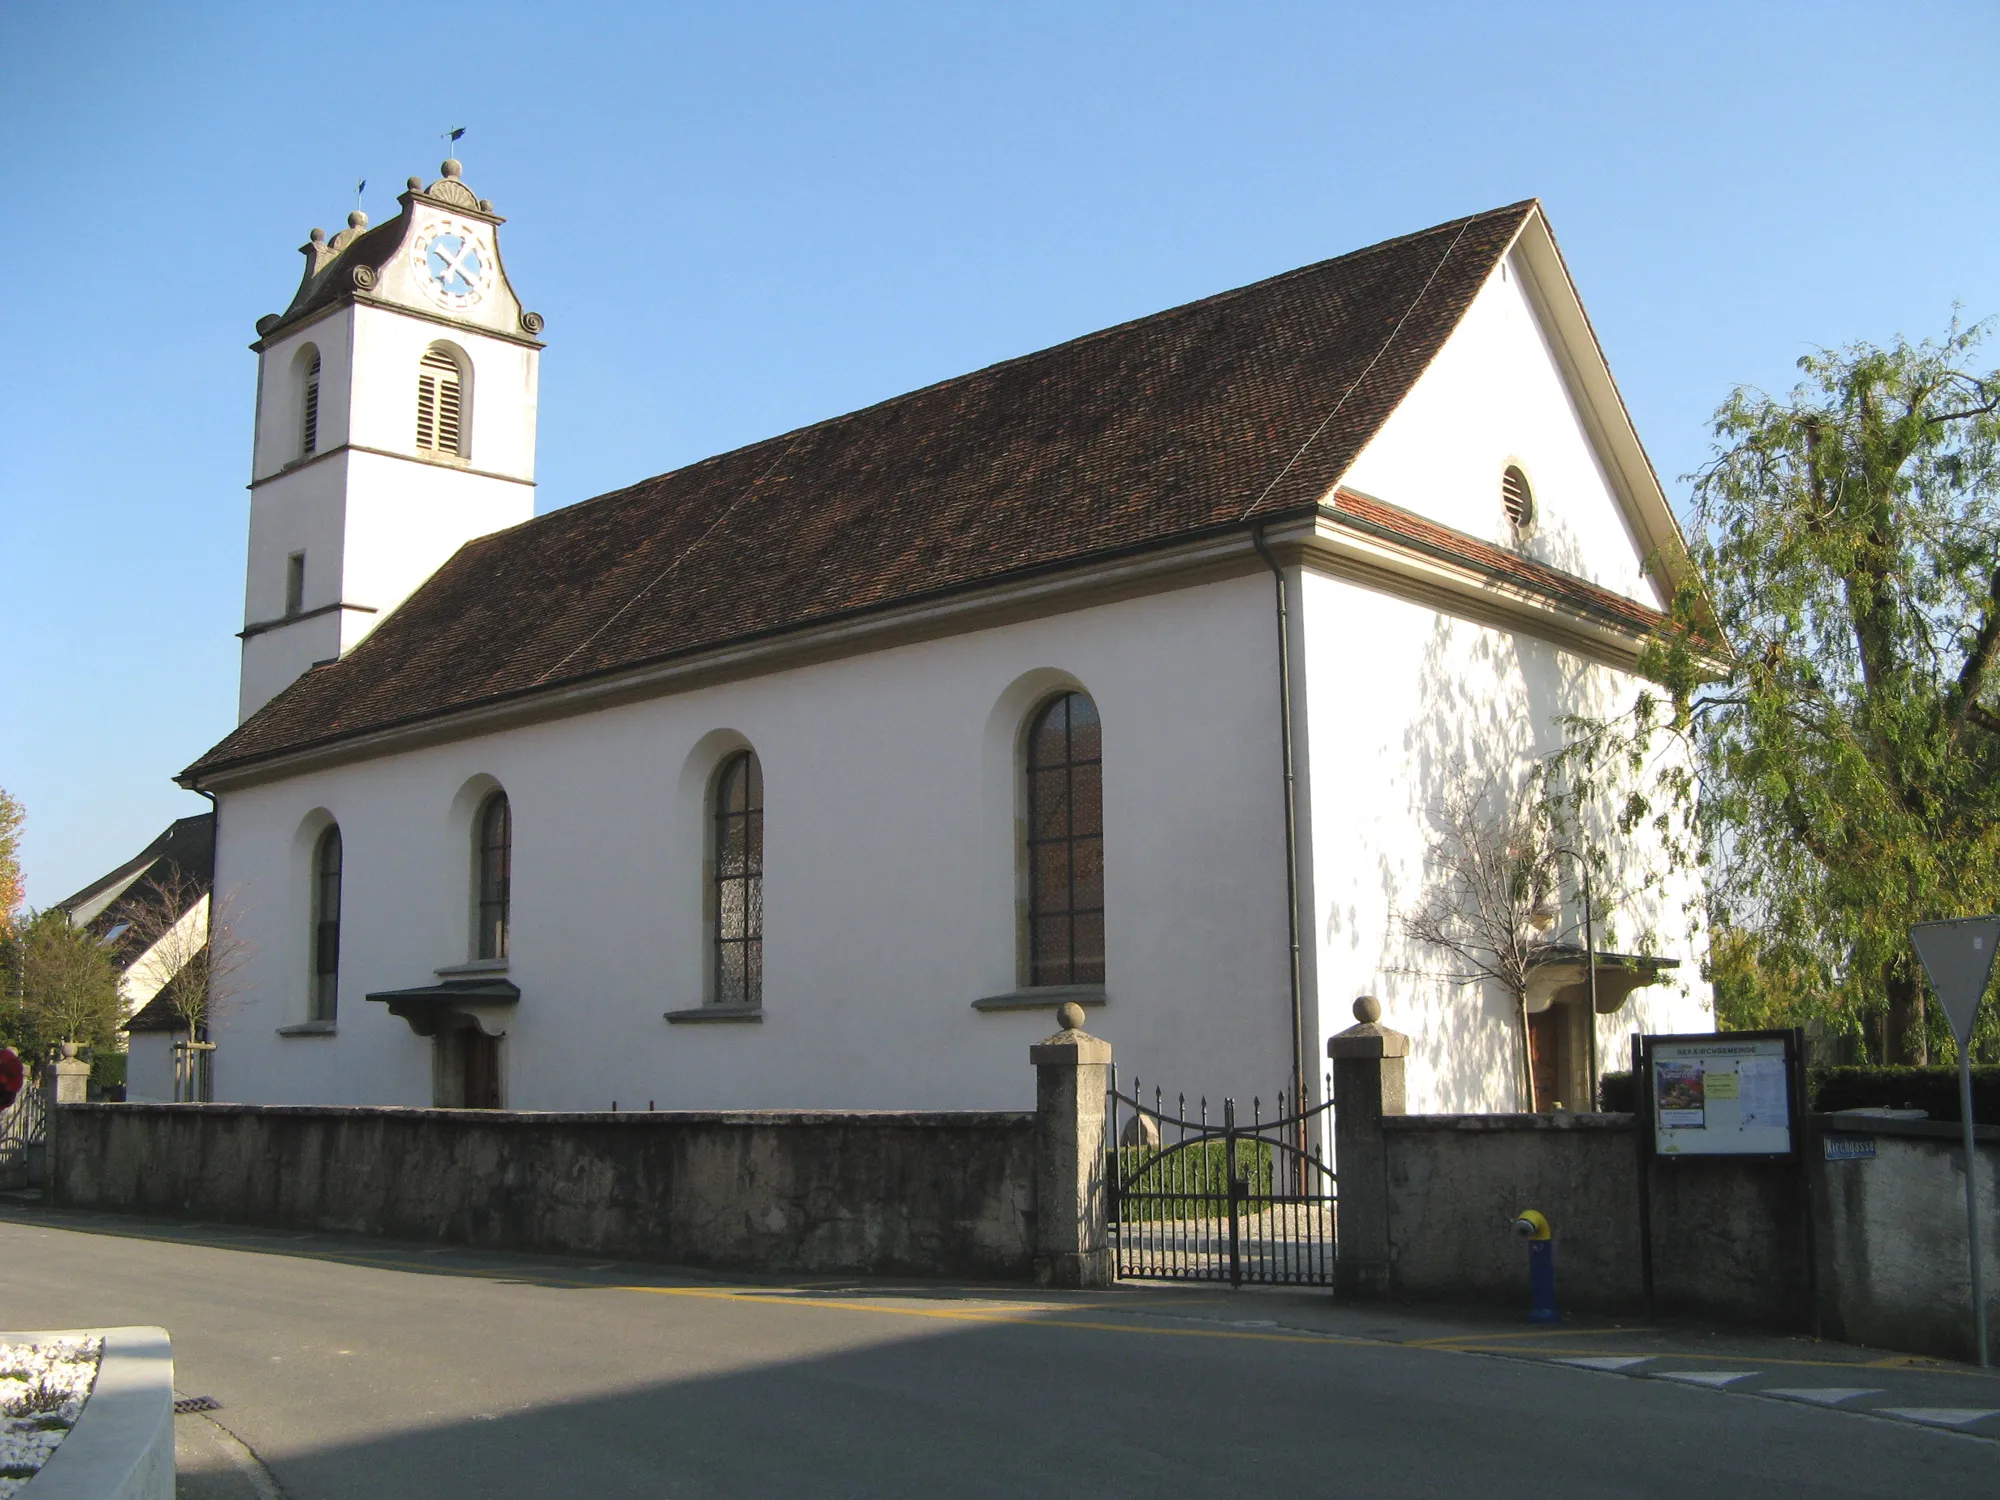 Image of Schinznach Dorf